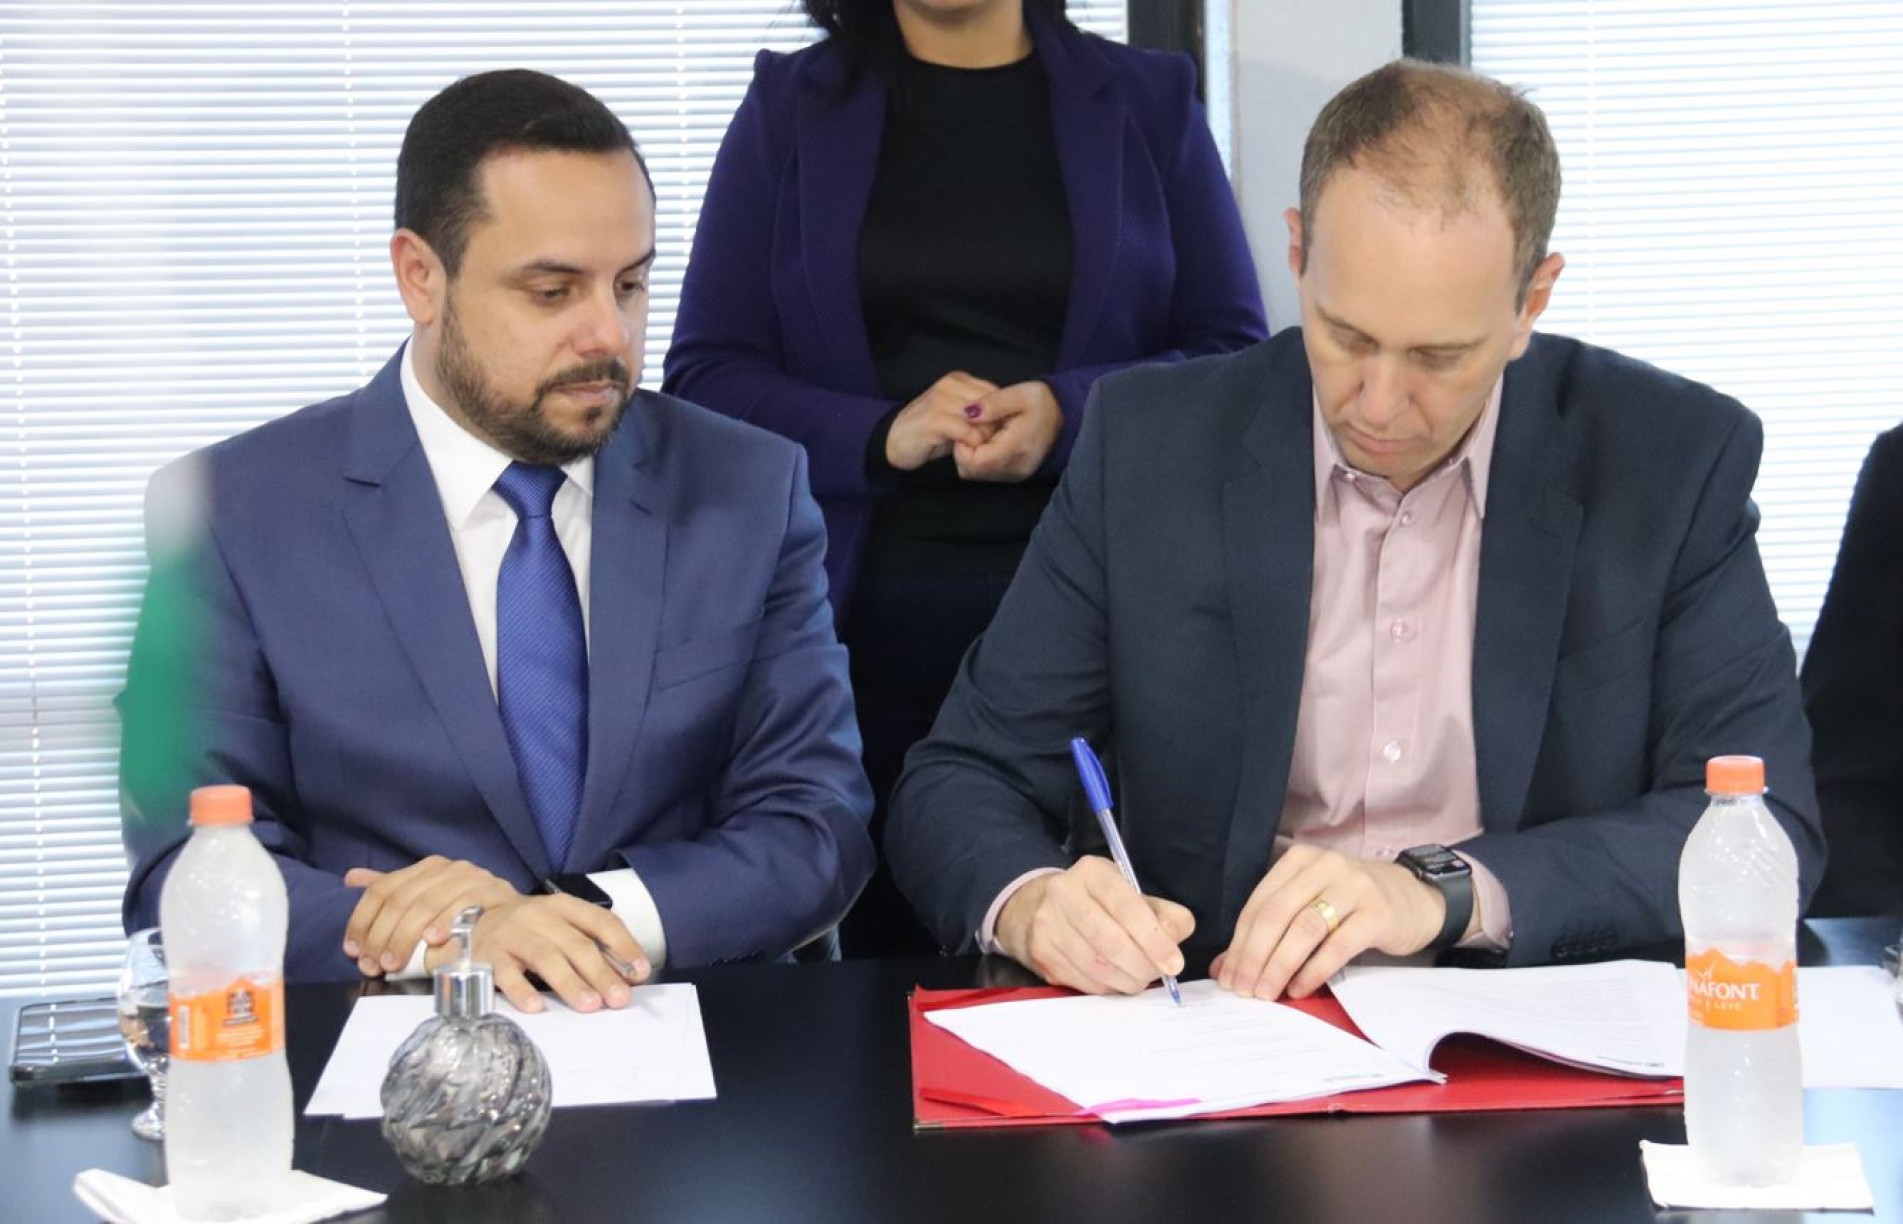 A assinatura do convênio ocorreu no Paço Municipal com a presença do prefeito Rodrigo Manga e do presidente da subseção de Sorocaba da OAB Márcio Leme.